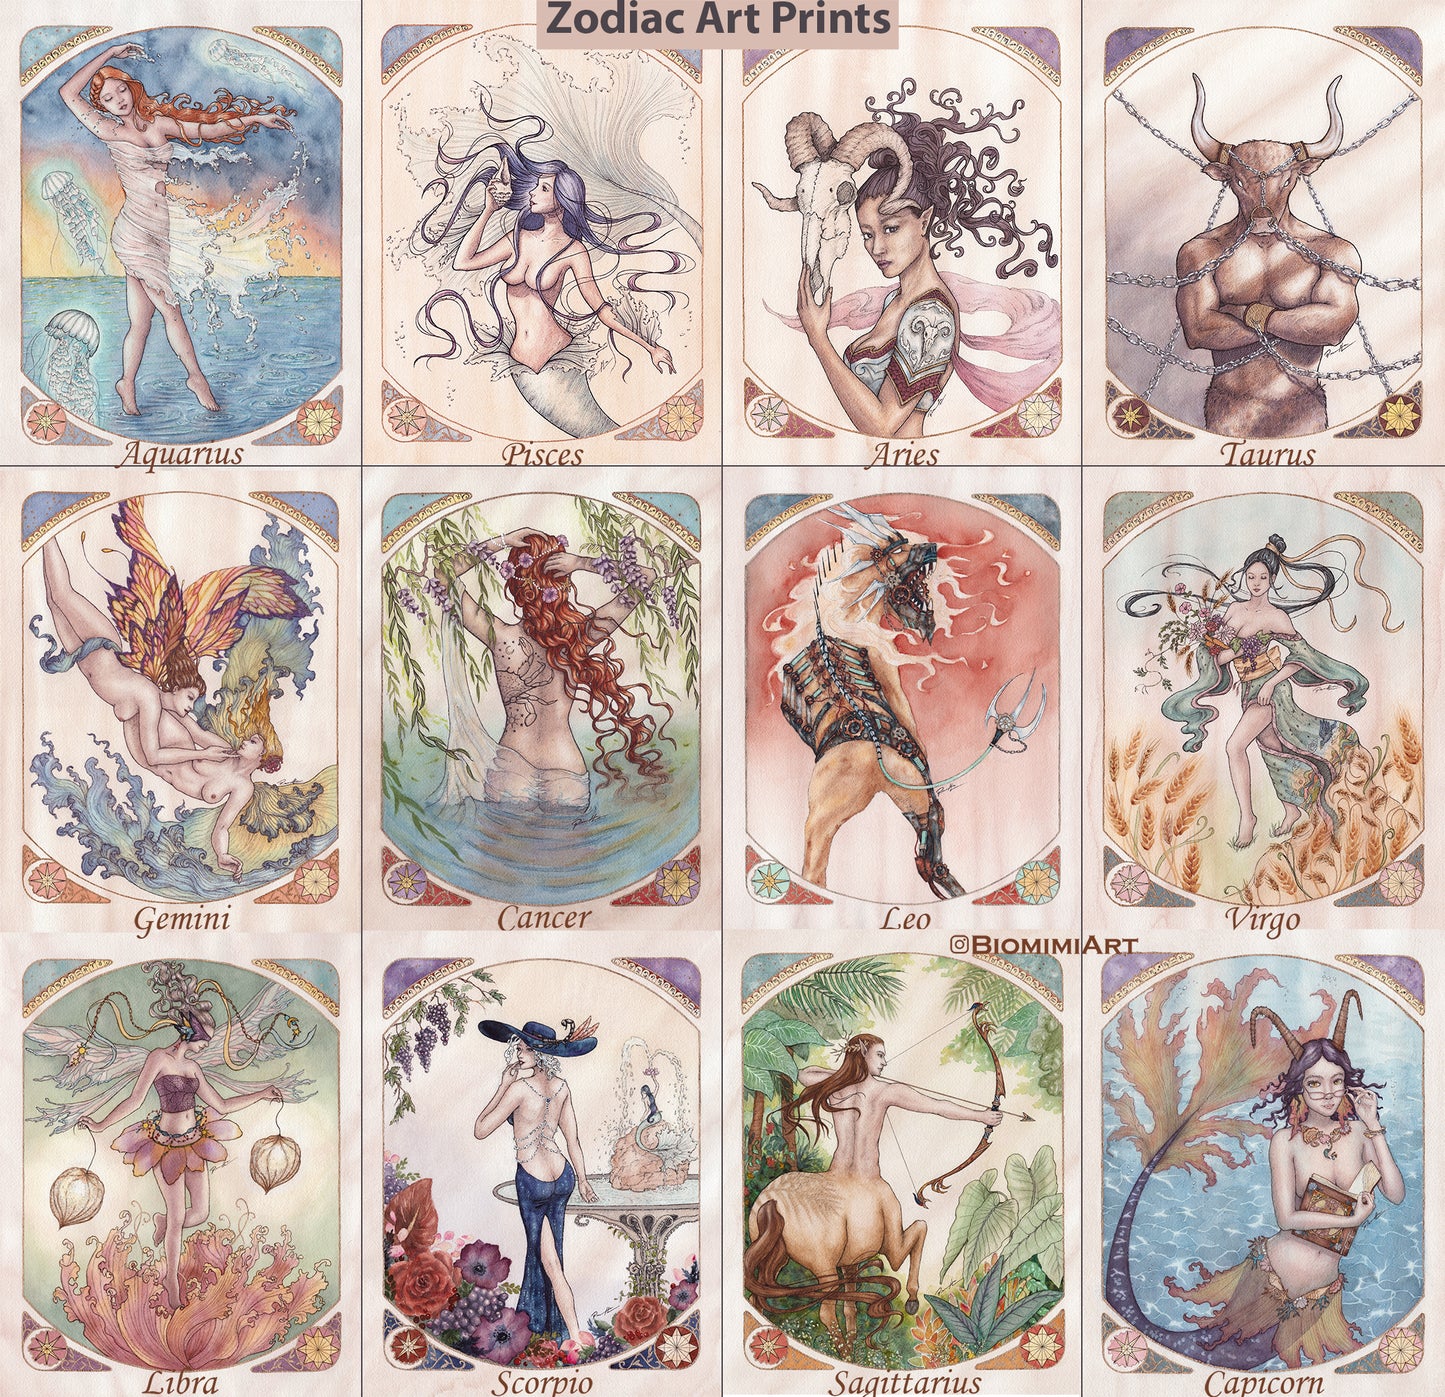 Aries - Zodiac Series